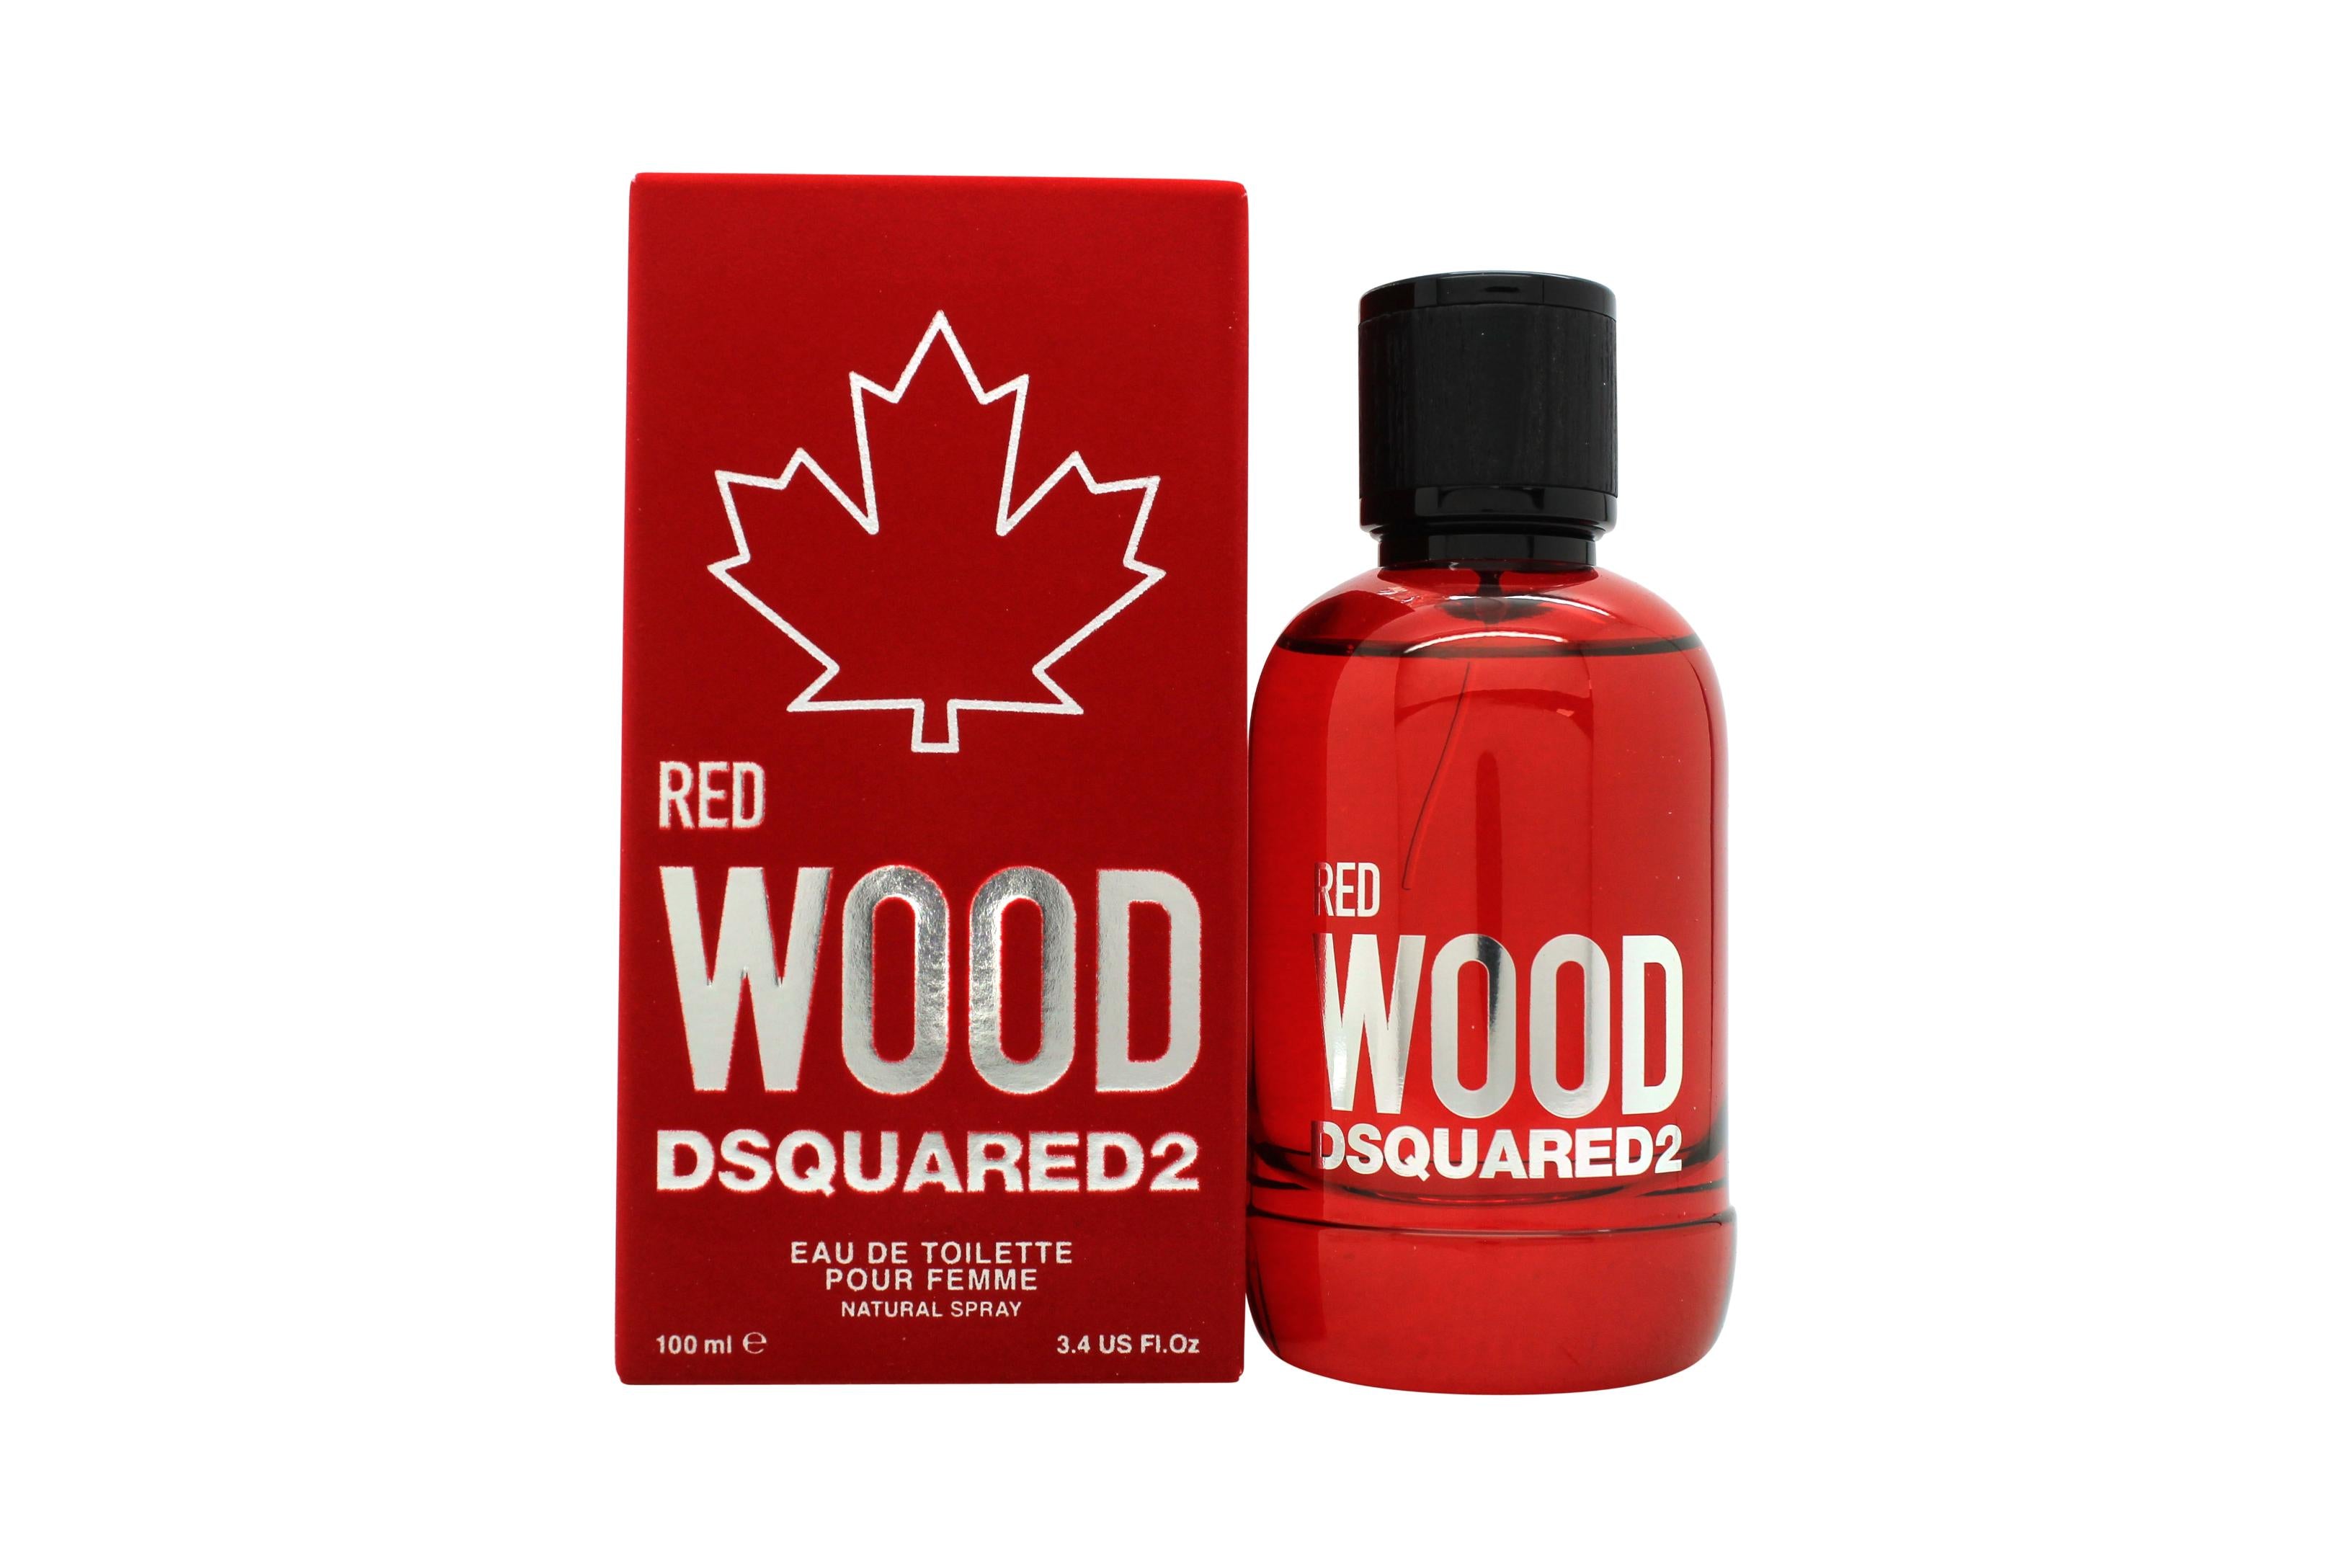 View DSquared² Red Wood Eau de Toilette 100ml Spray information